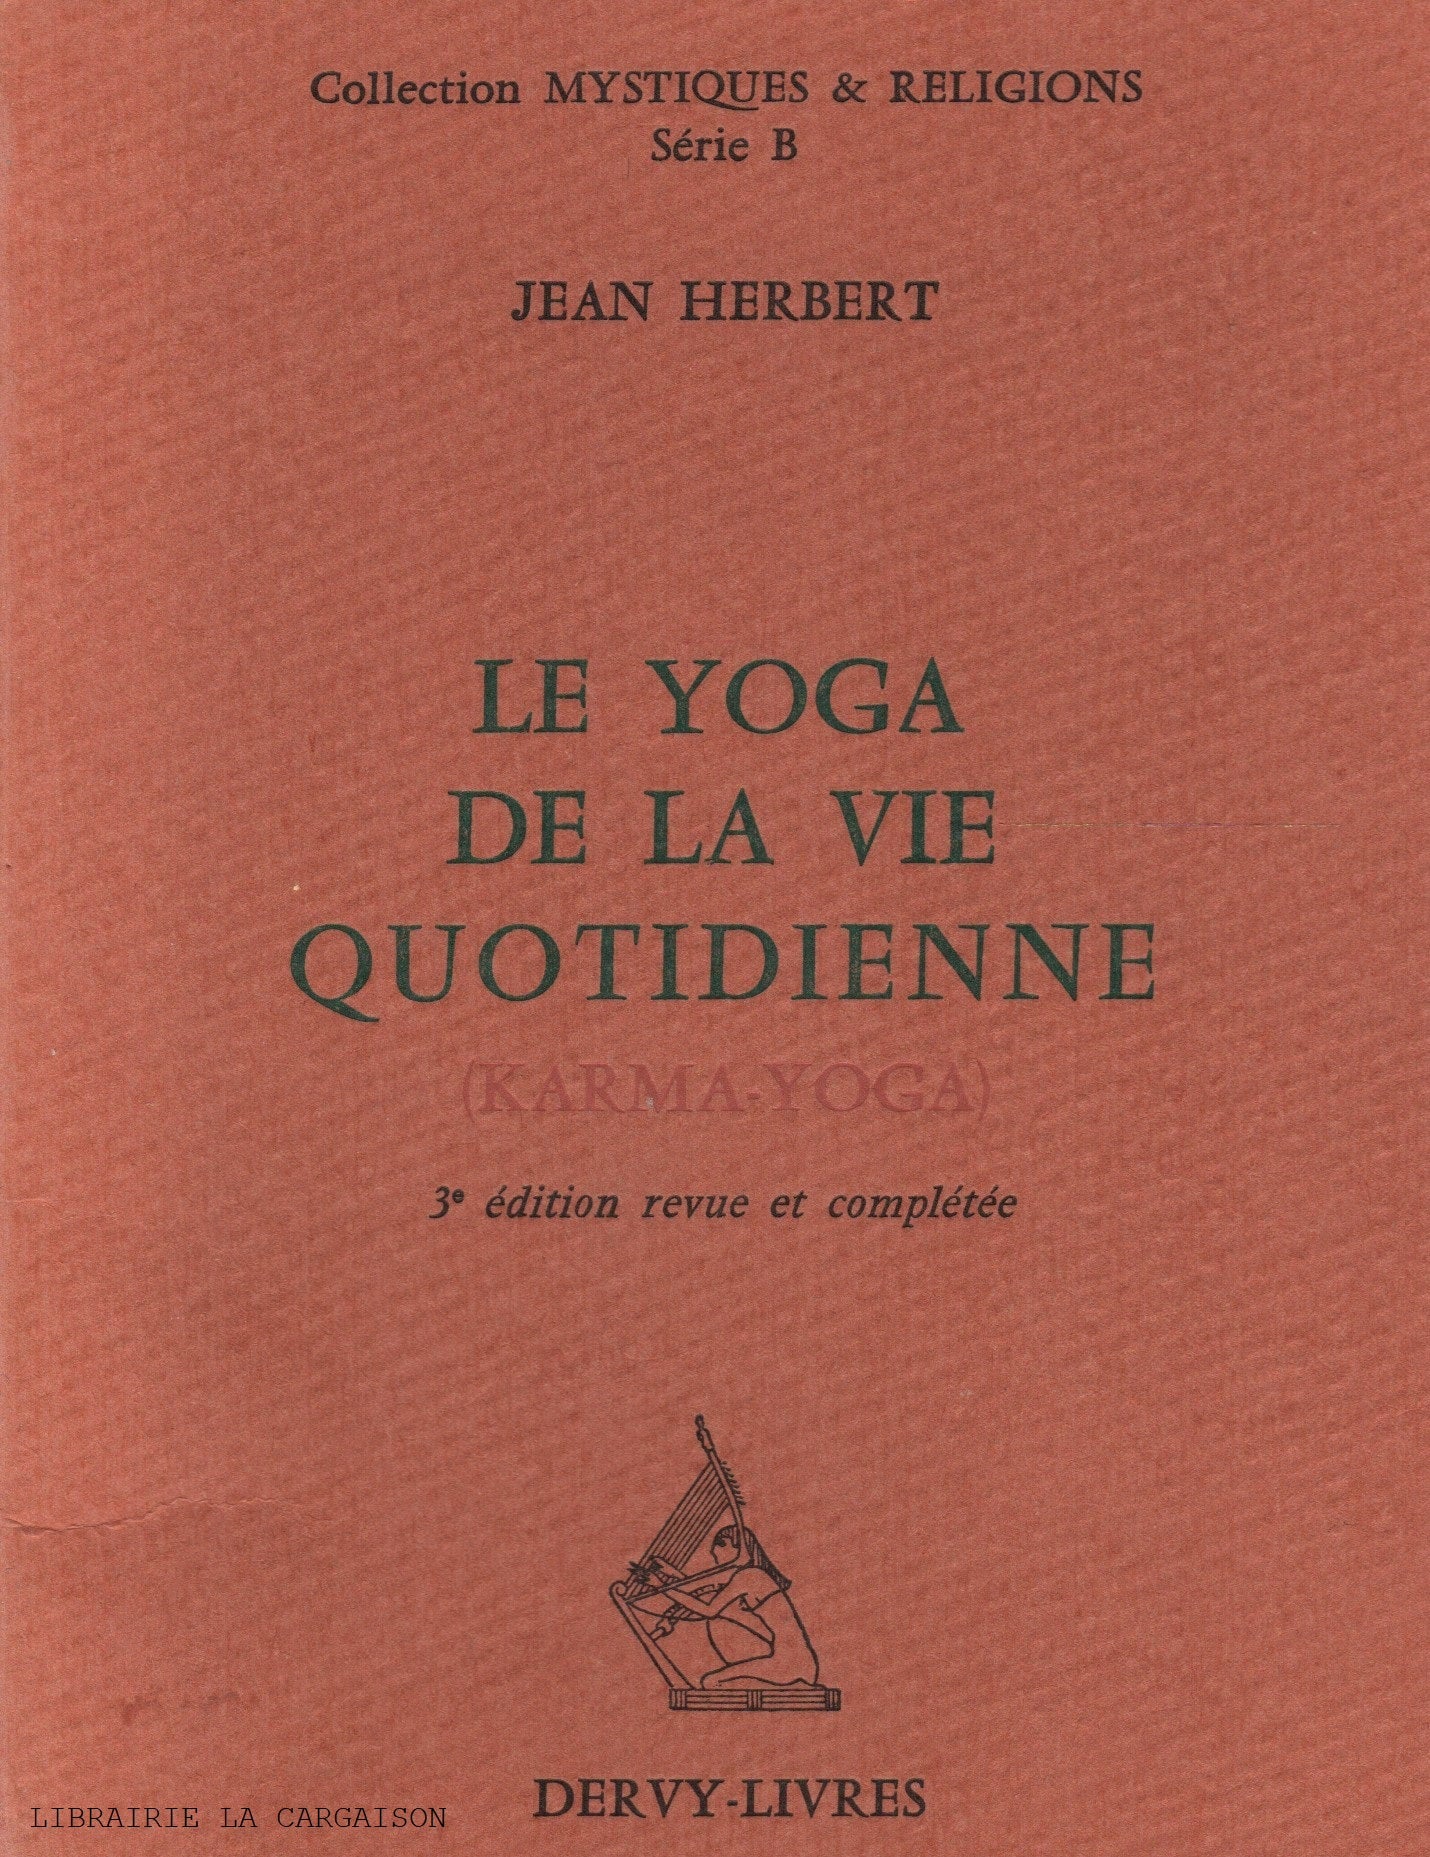 HERBERT, JEAN. Yoga de la vie quotidienne (Le) : Karma-Yoga - 3e édition